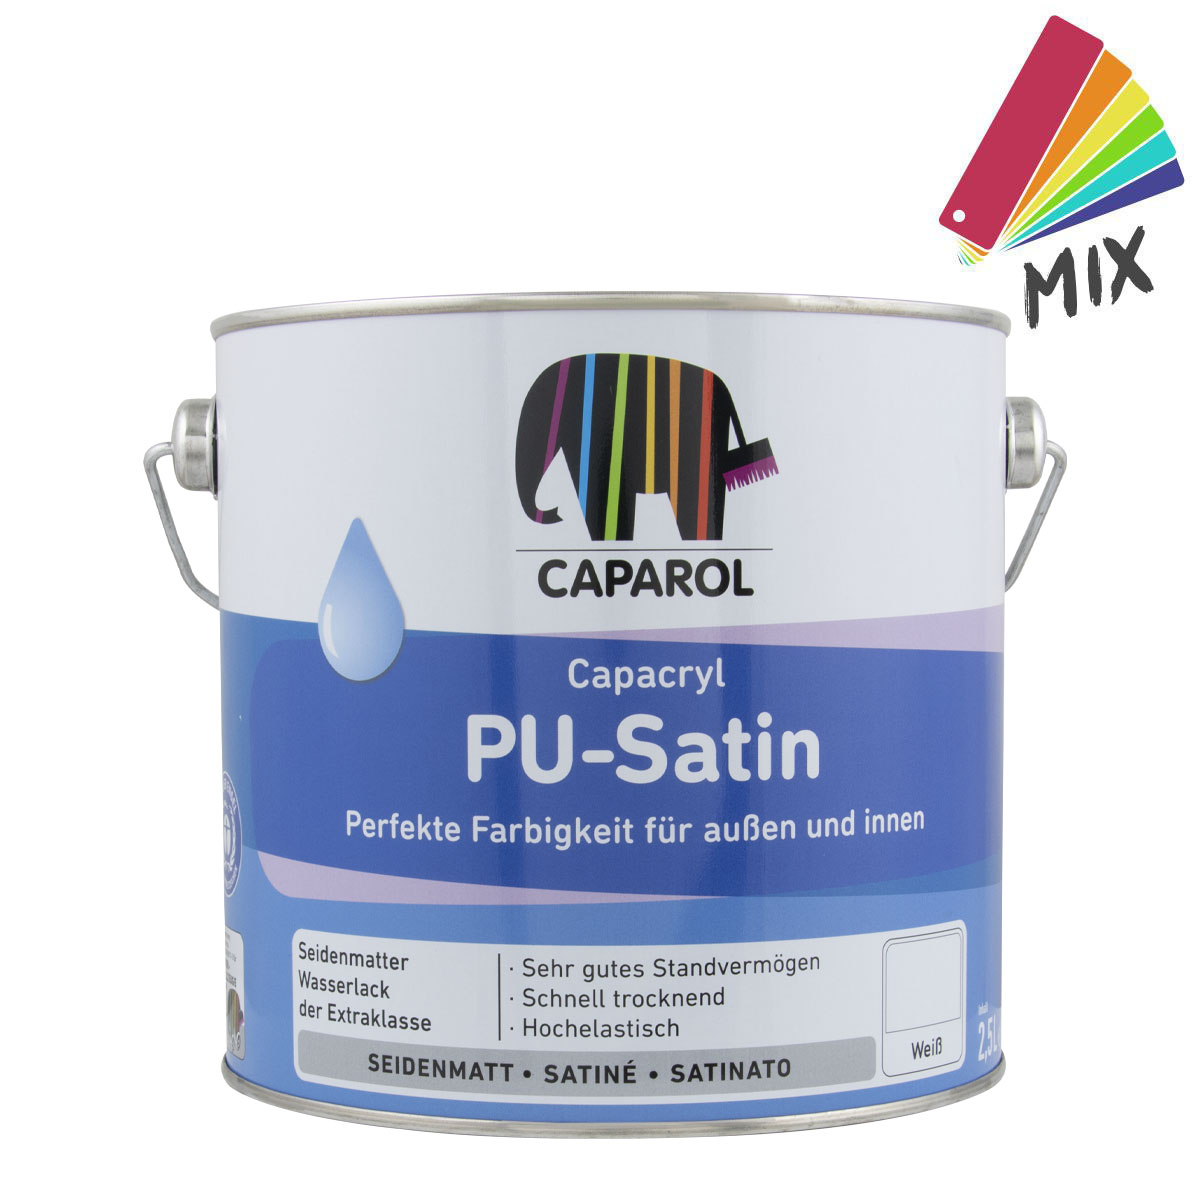 caparol_Pu-Satin_2,5L_MIX_gross